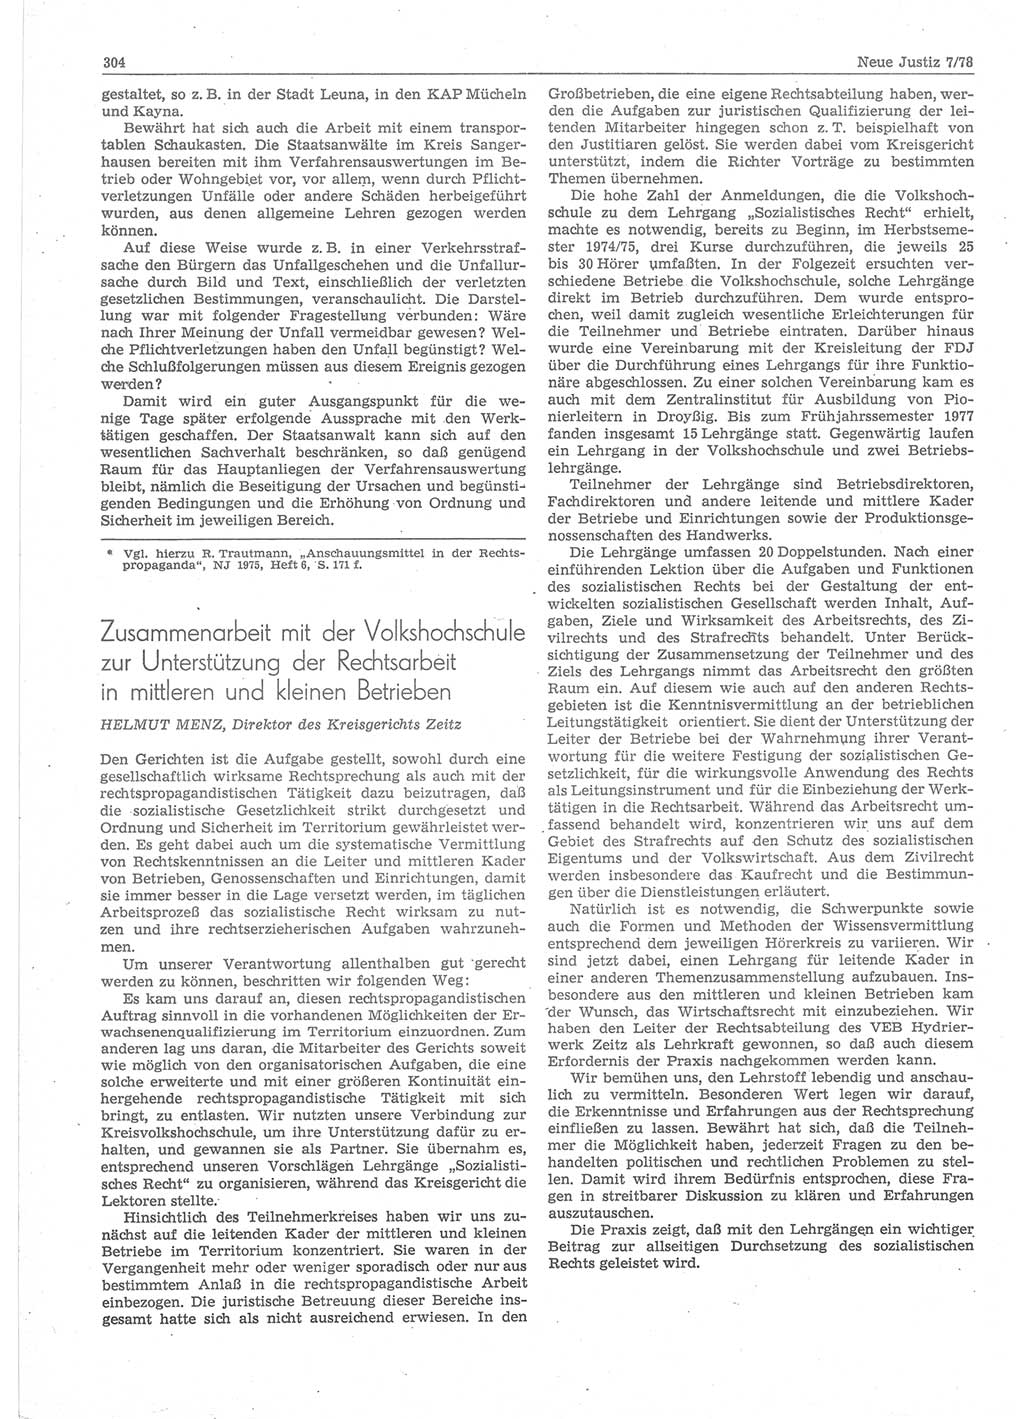 Neue Justiz (NJ), Zeitschrift für sozialistisches Recht und Gesetzlichkeit [Deutsche Demokratische Republik (DDR)], 32. Jahrgang 1978, Seite 304 (NJ DDR 1978, S. 304)